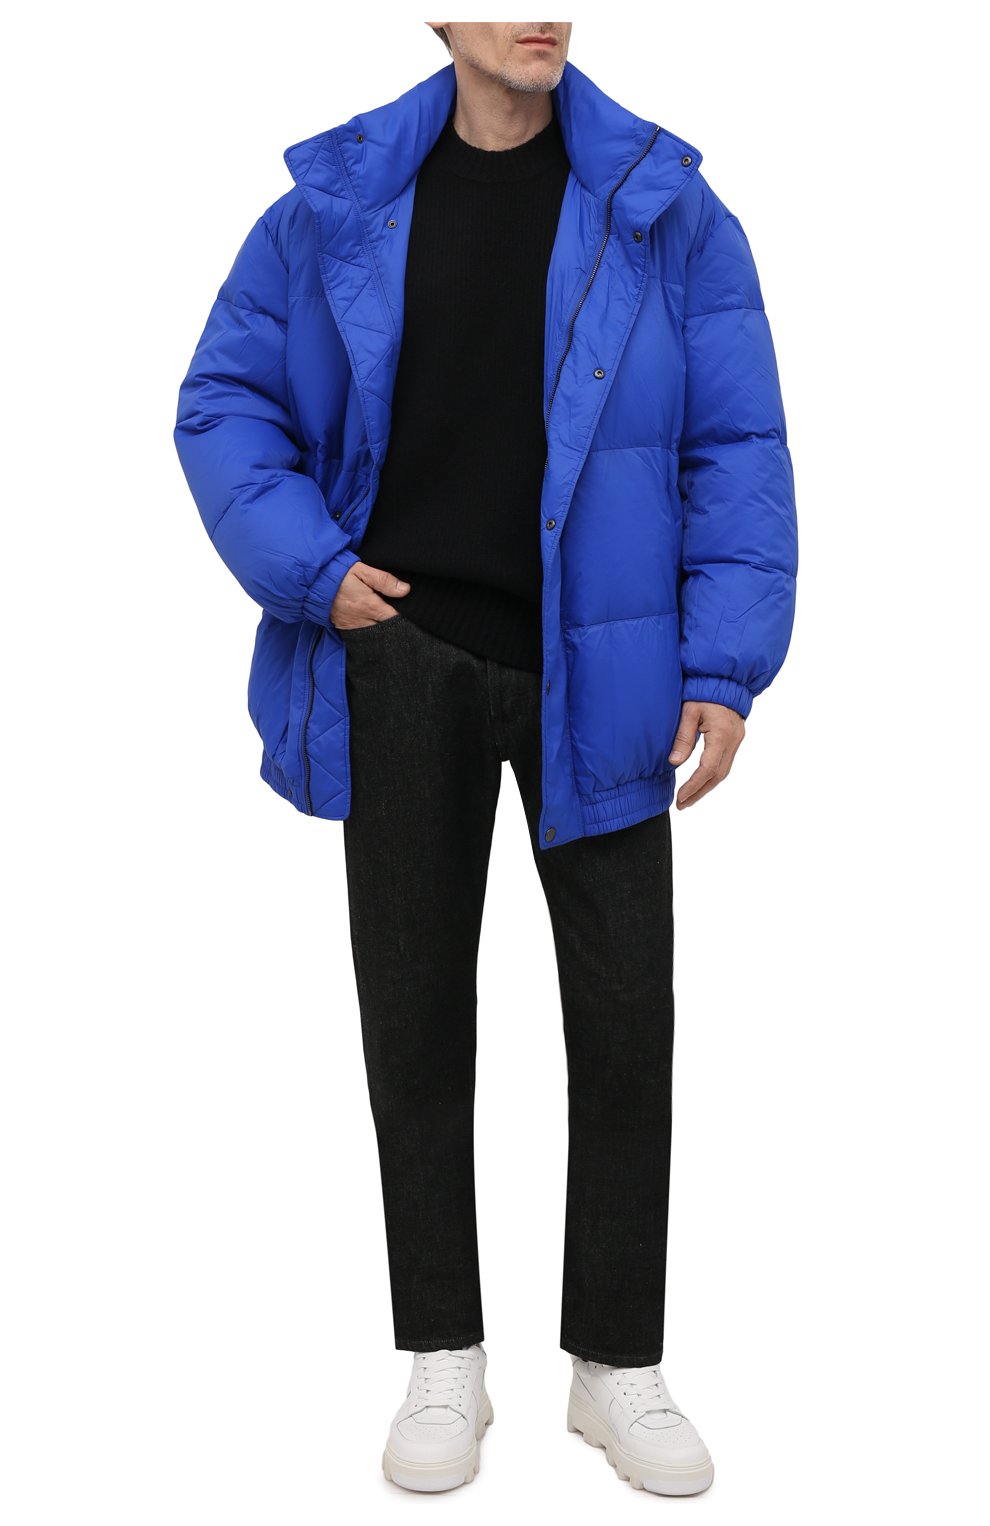 Мужская утепленная куртка ISABEL MARANT синего цвета, арт. MA1032-21A002H/DILYAM | Фото 2 (Кросс-КТ: Куртка; Рукава: Длинные; Длина (верхняя одежда): До середины бедра; Материал внешний: Синтетический материал; Мужское Кросс-КТ: утепленные куртки; Материал подклада: Синтетический материал; Стили: Минимализм)